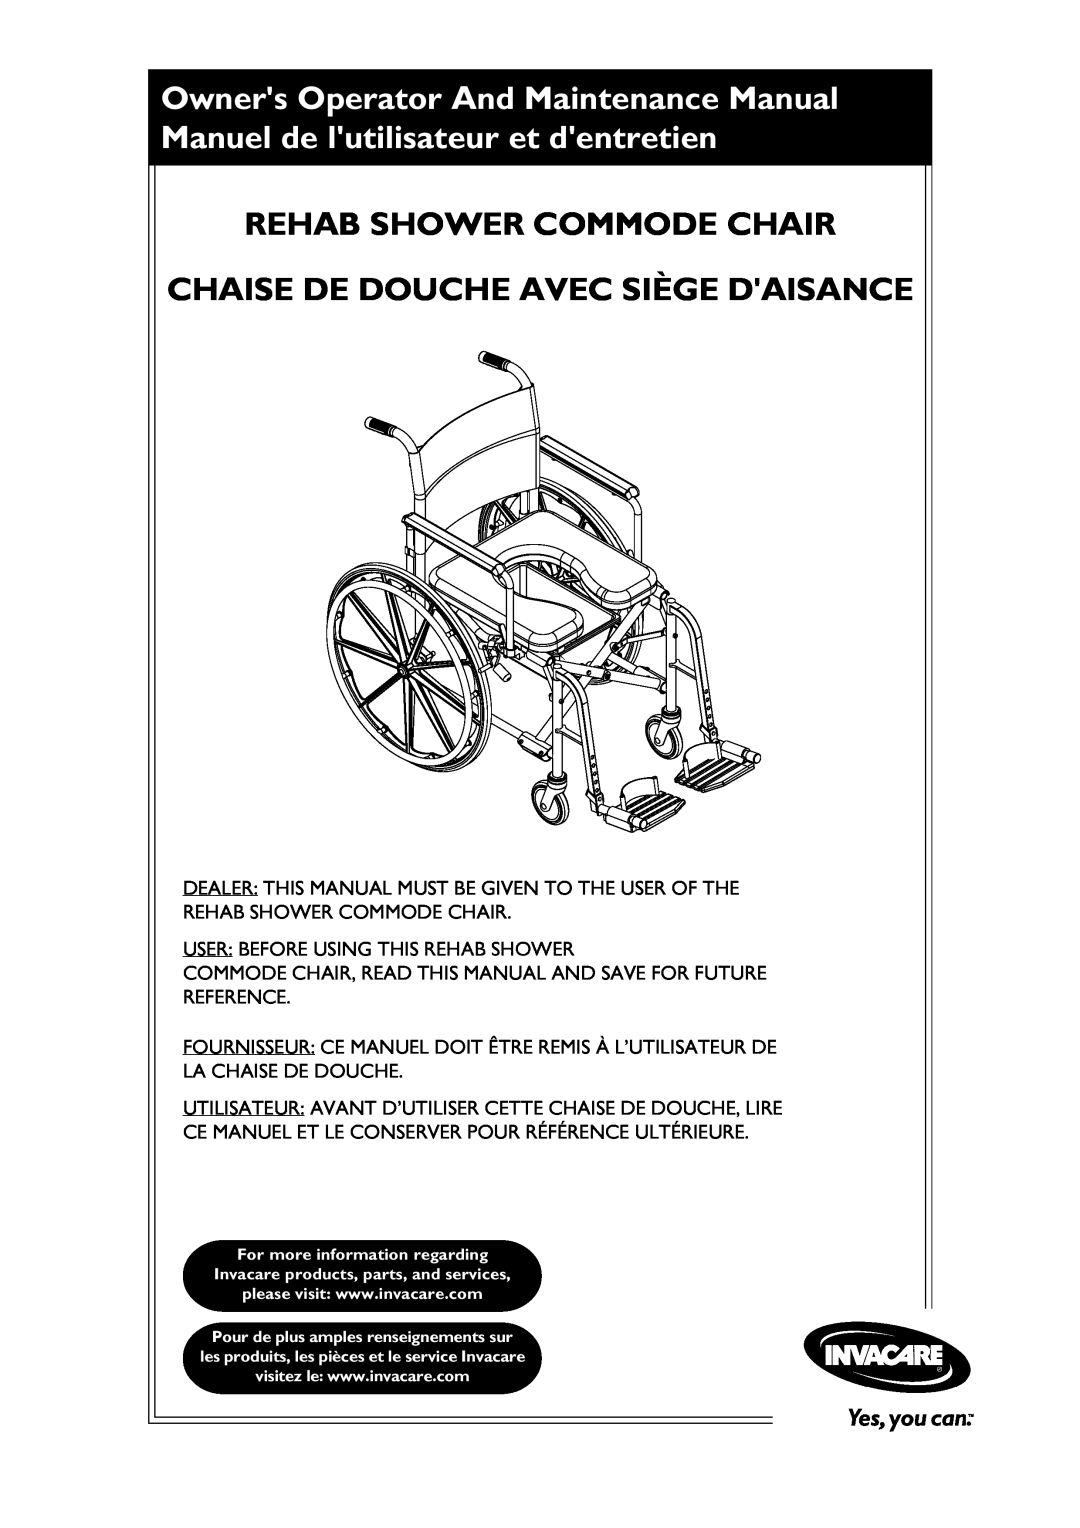 Invacare 6895, 6795, 6891 manual Rehab Shower Commode Chair Chaise De Douche Avec Siège Daisance 